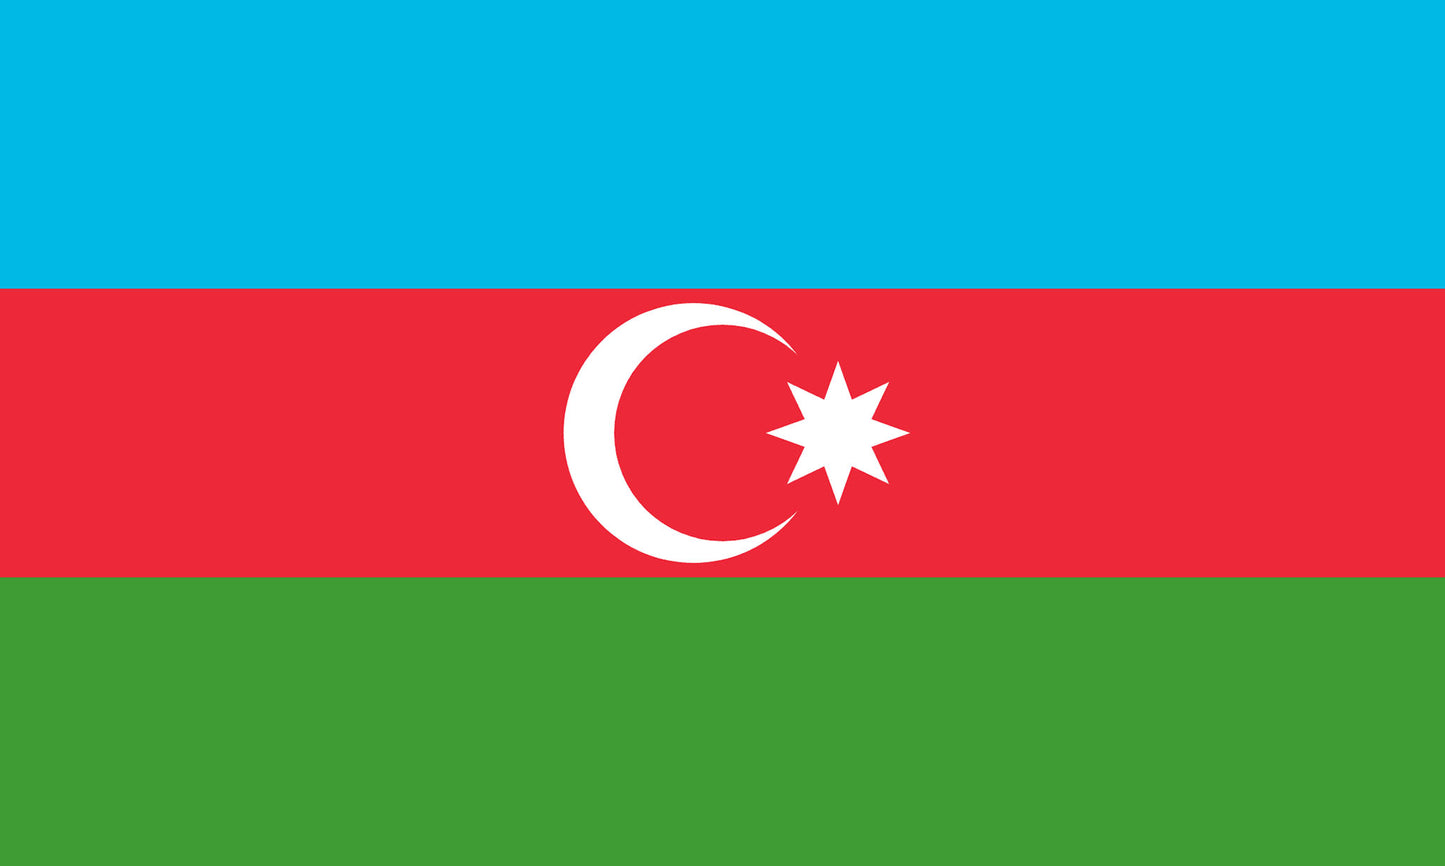 INR-AZR-15x22-2 - государственный флаг Республики Азербайджан, размер: 15х22 см, материал: атлас. Печать с двух сторон. Подставка и шток приобретаются отдельно